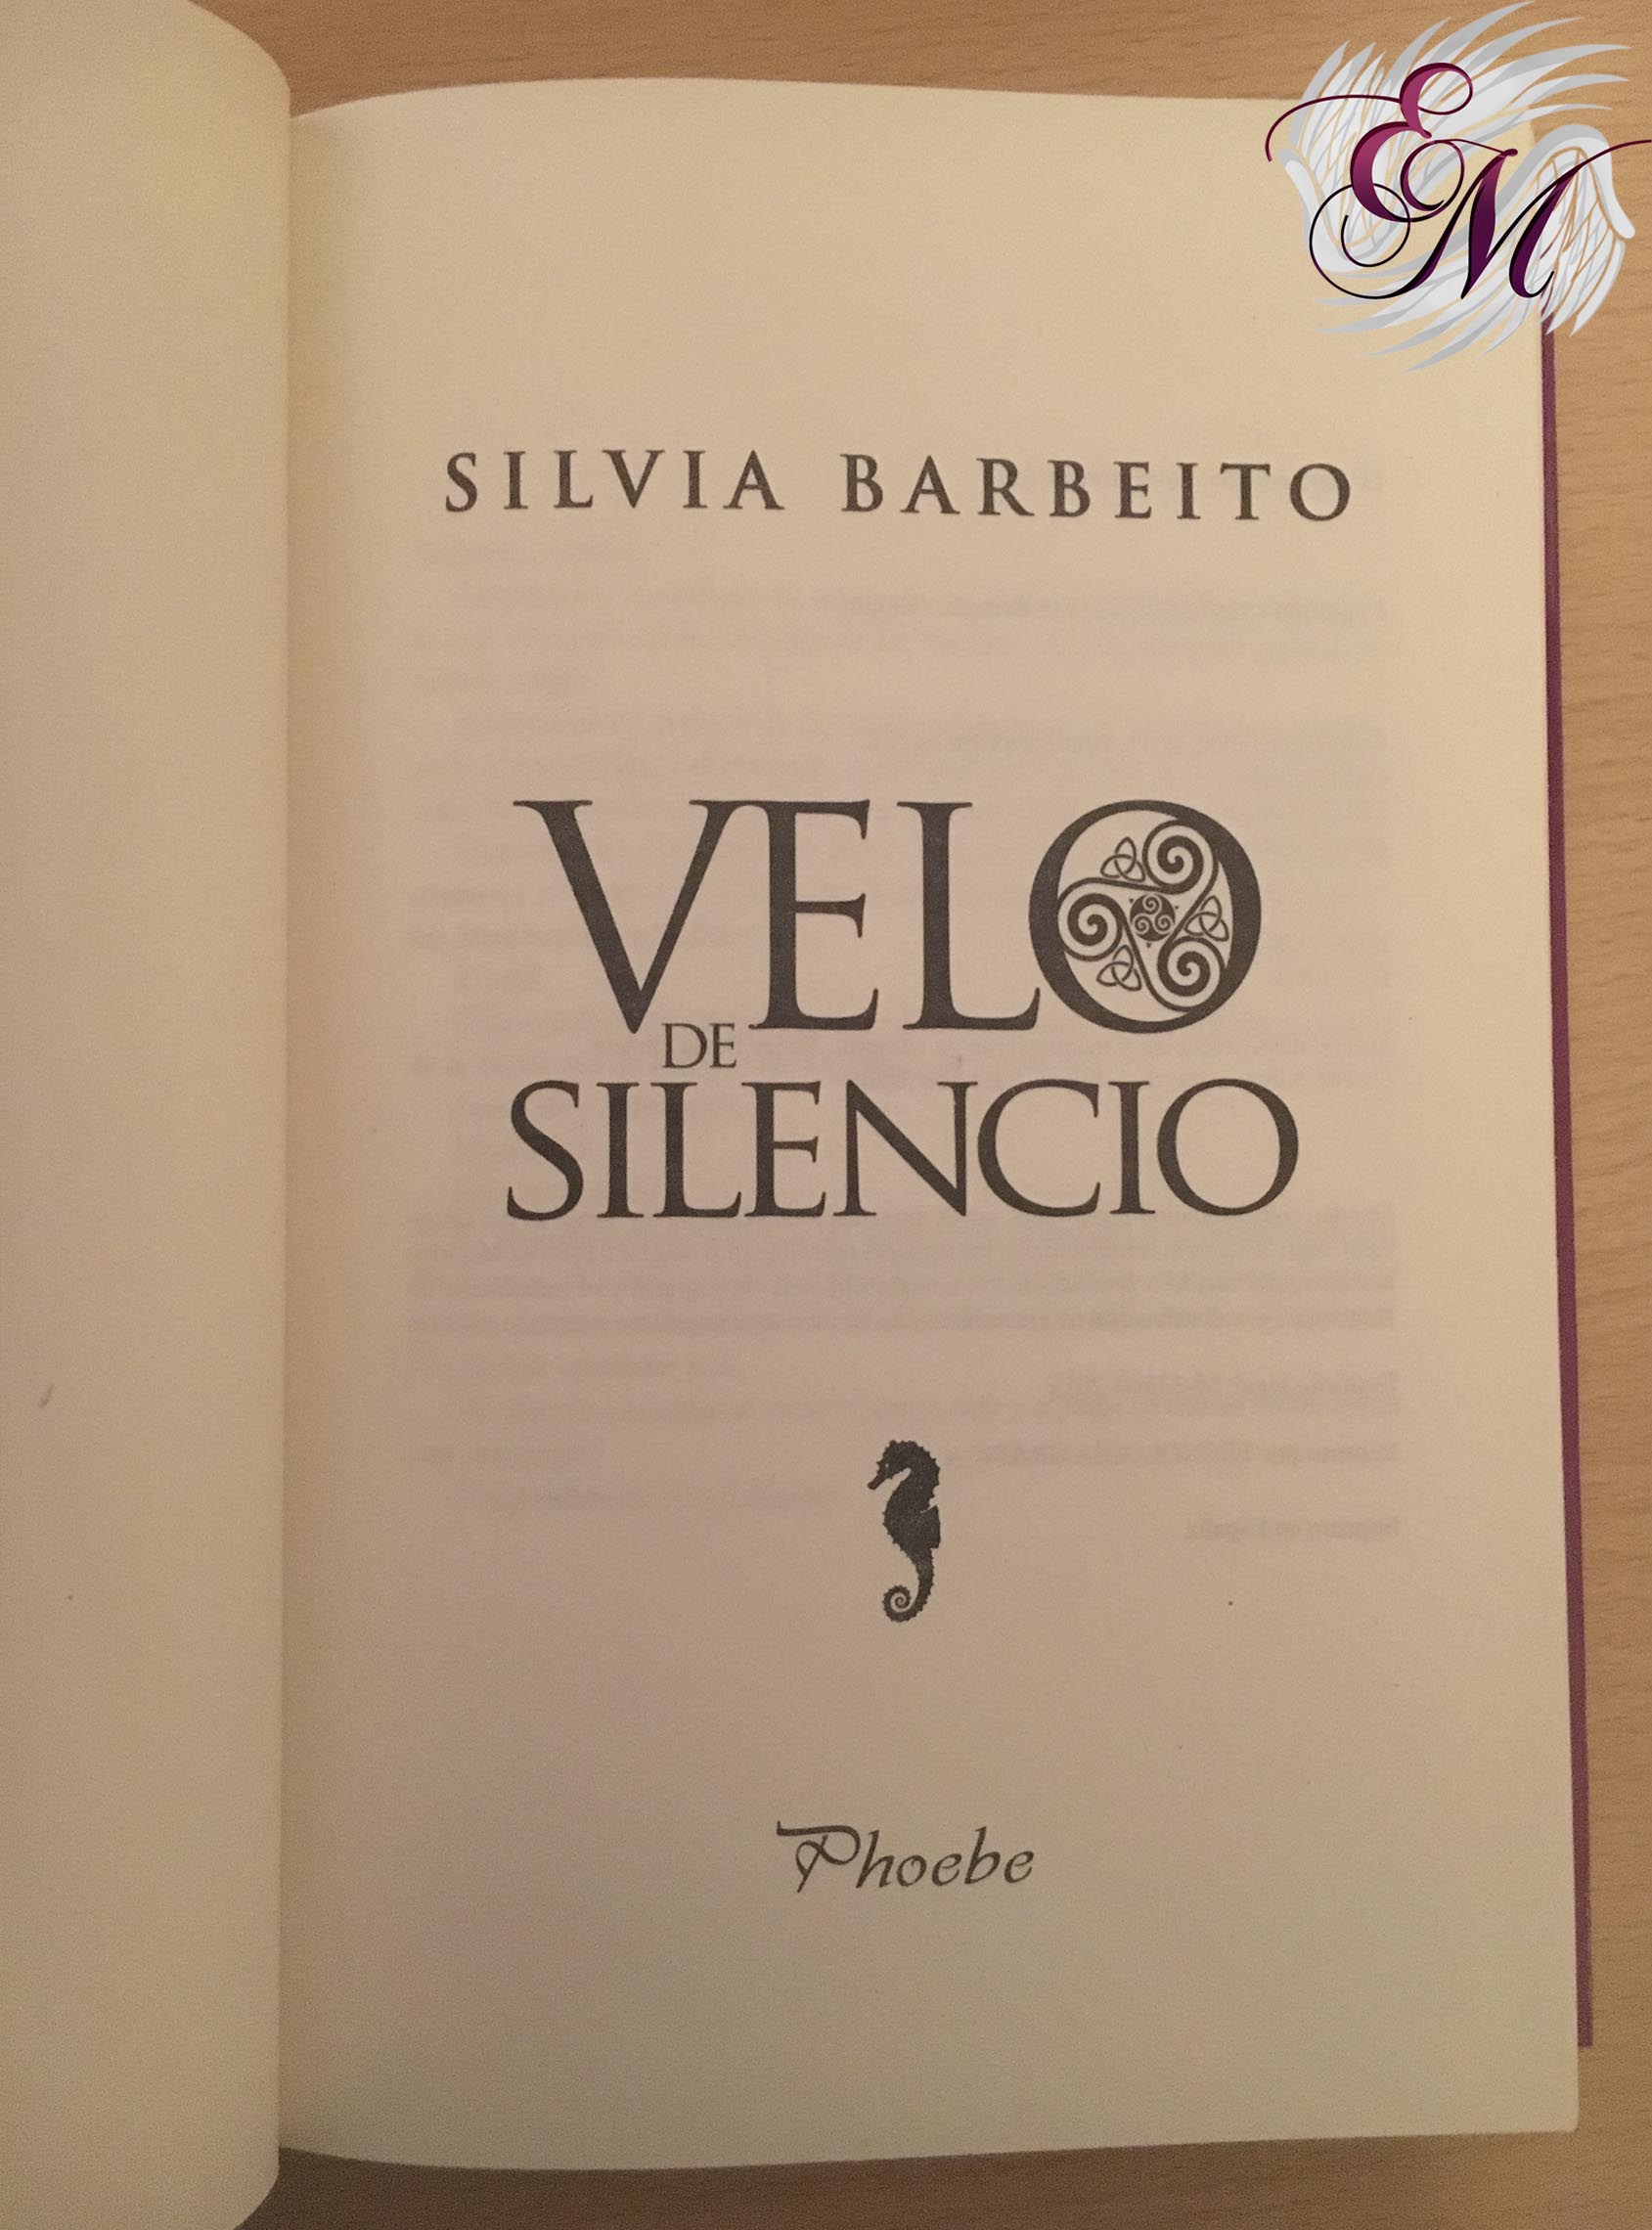 Velo de silencio, de Silvia Barbeito - Reseña